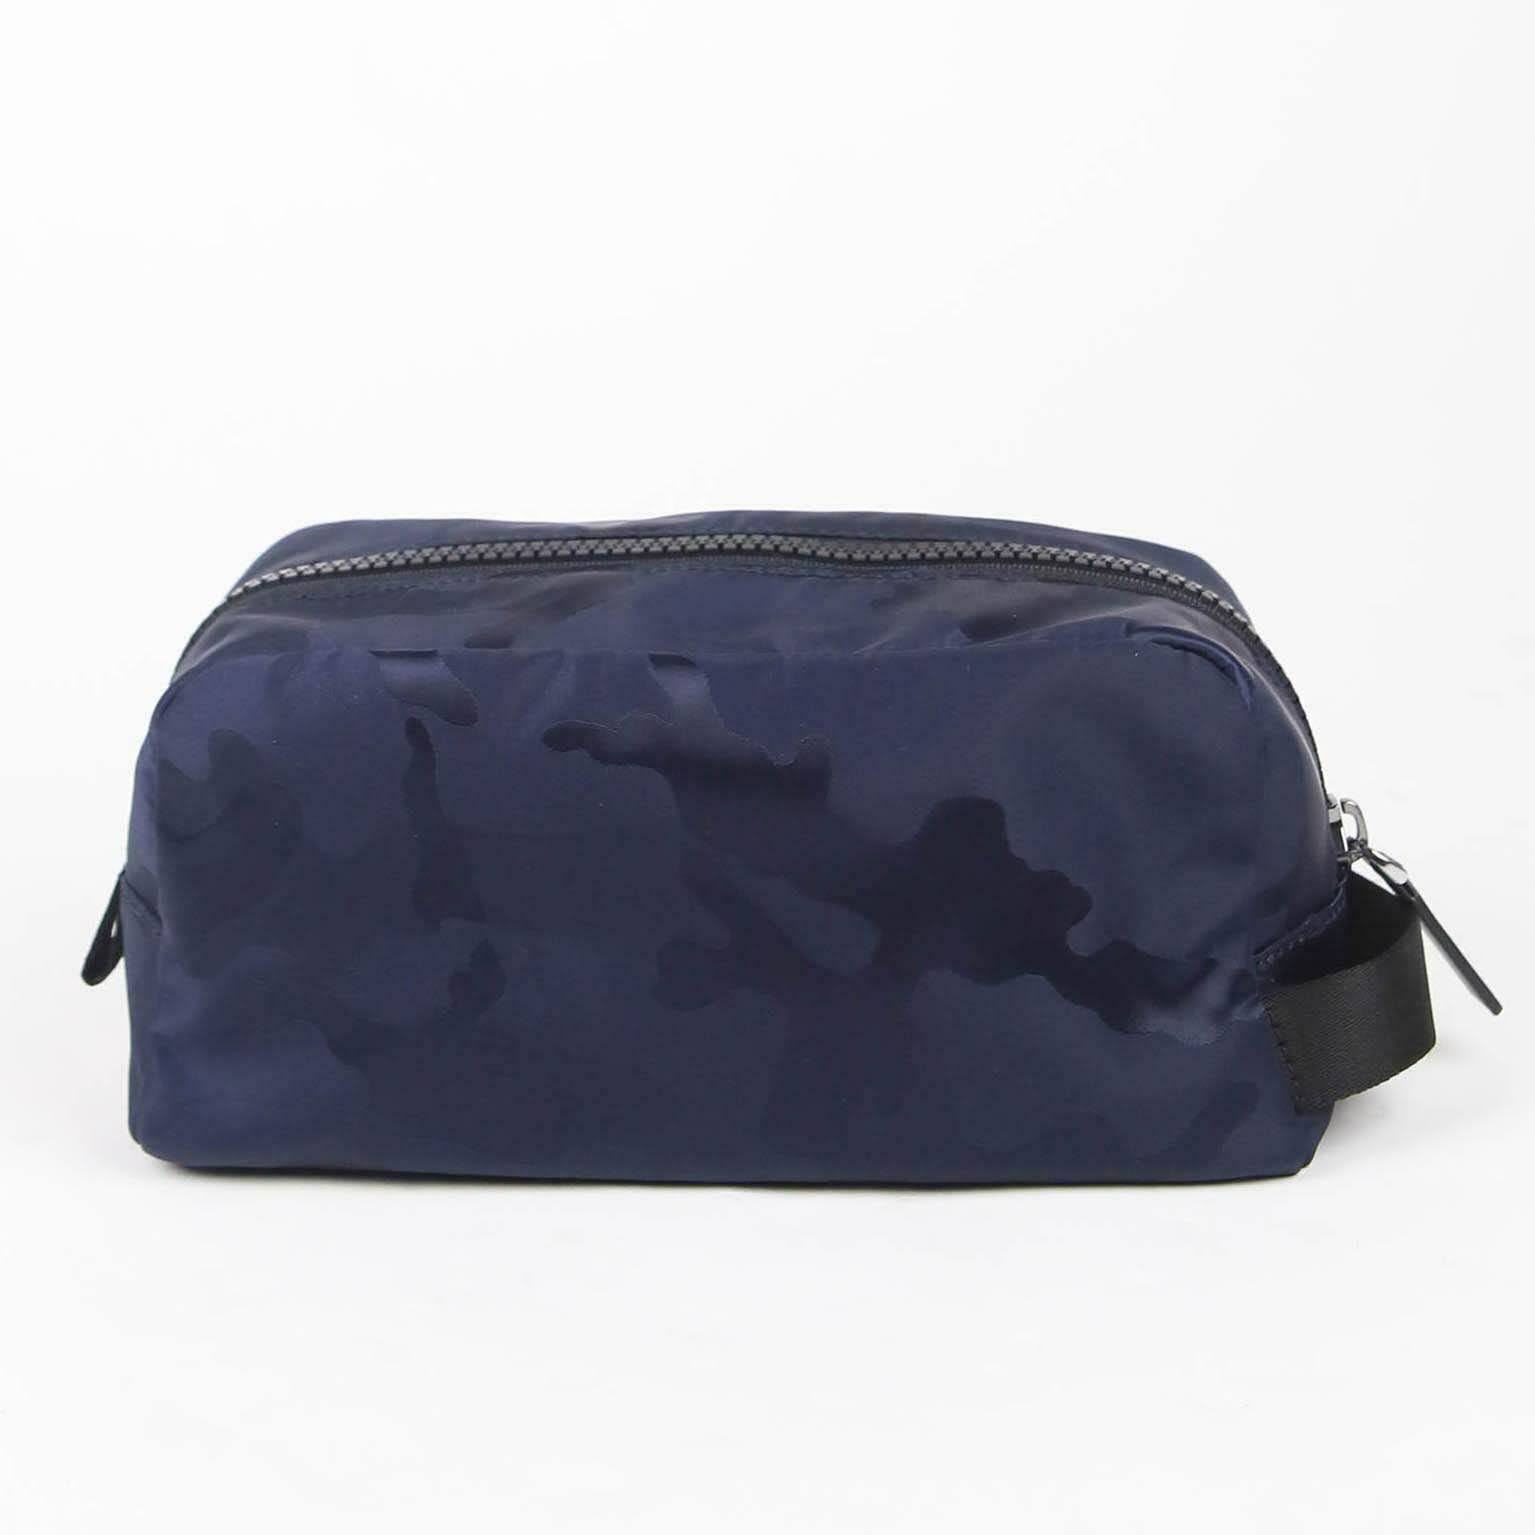 Mens Camouflage Nylon Jacquard Backpack, Michael Kors, Large, Blue (Indigo)  